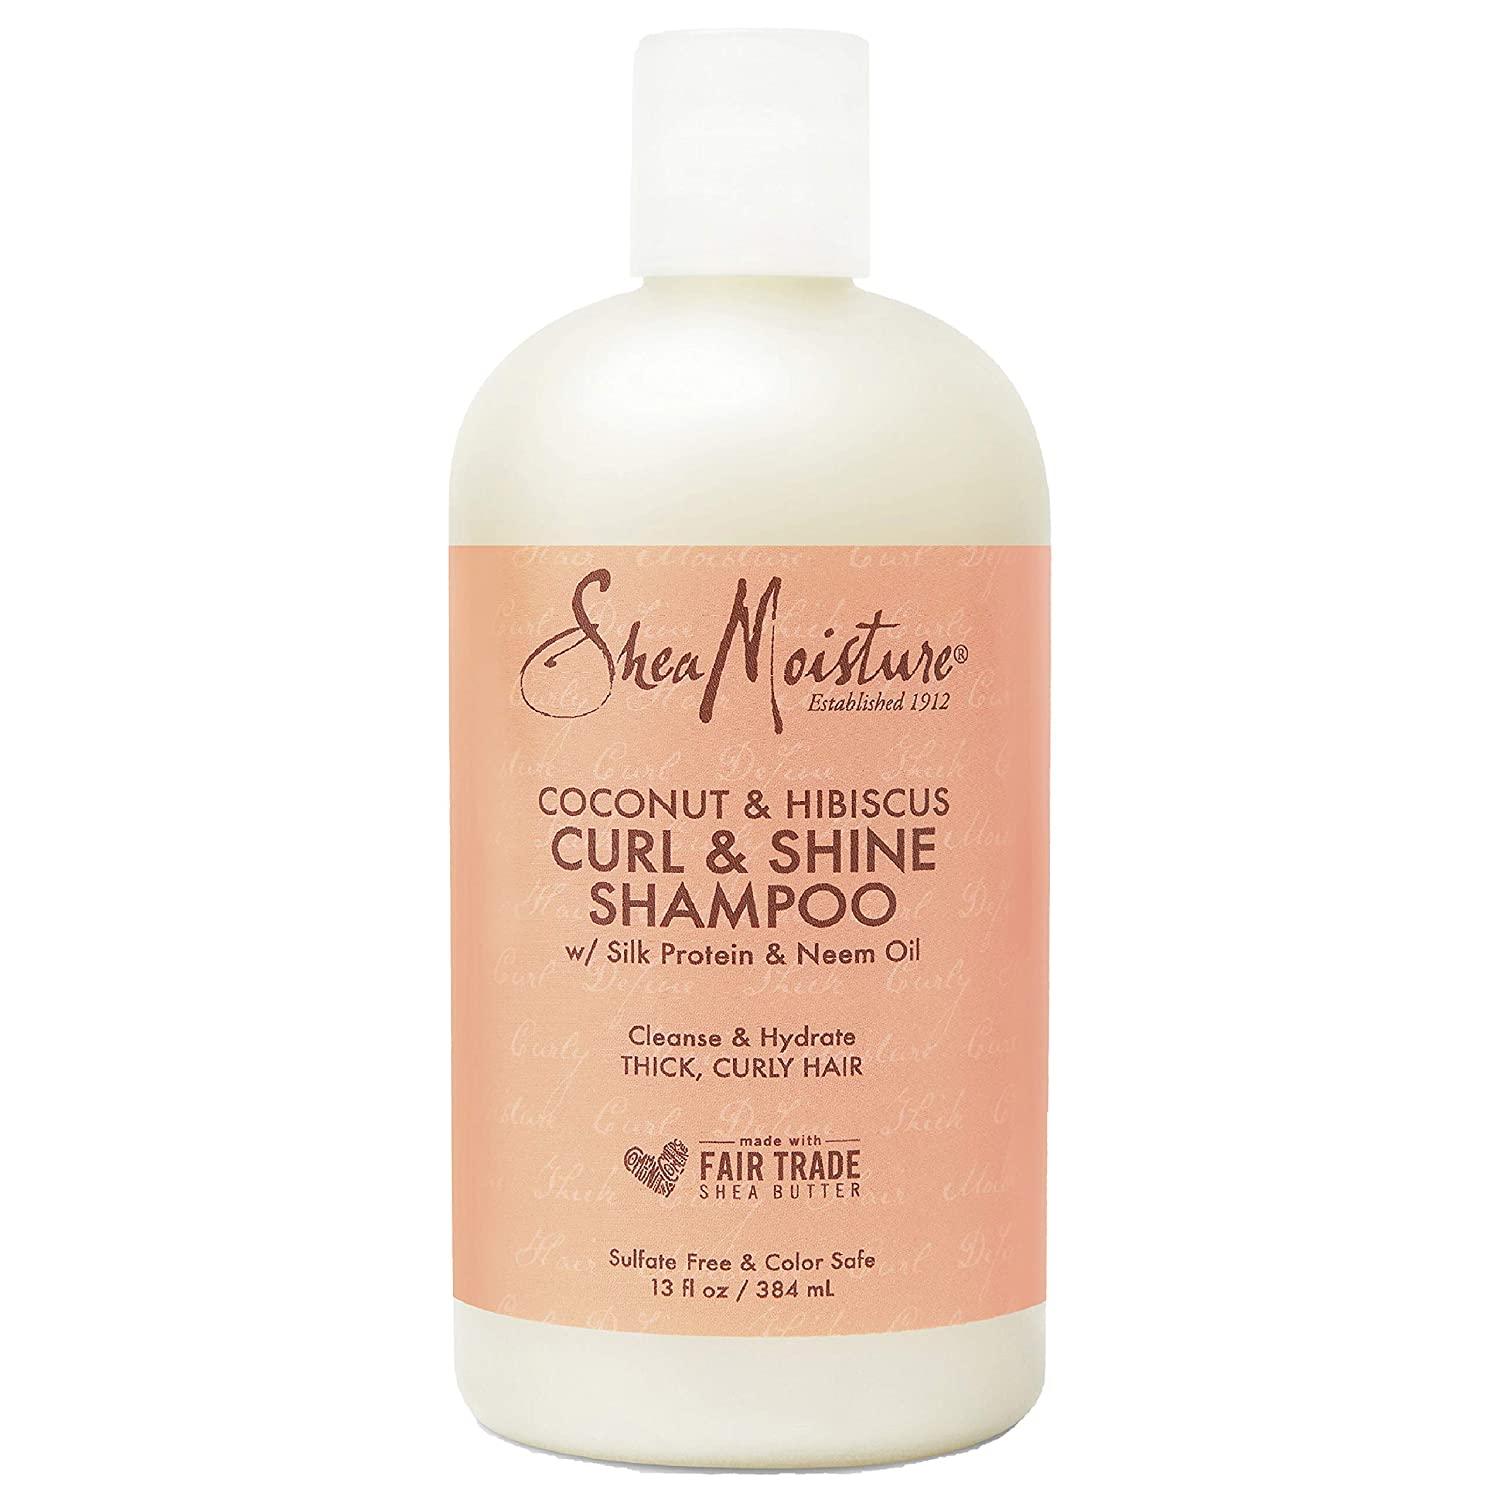 SheaMoisture Curl and Shine Coconut Shampoo for $4.75 Shipped